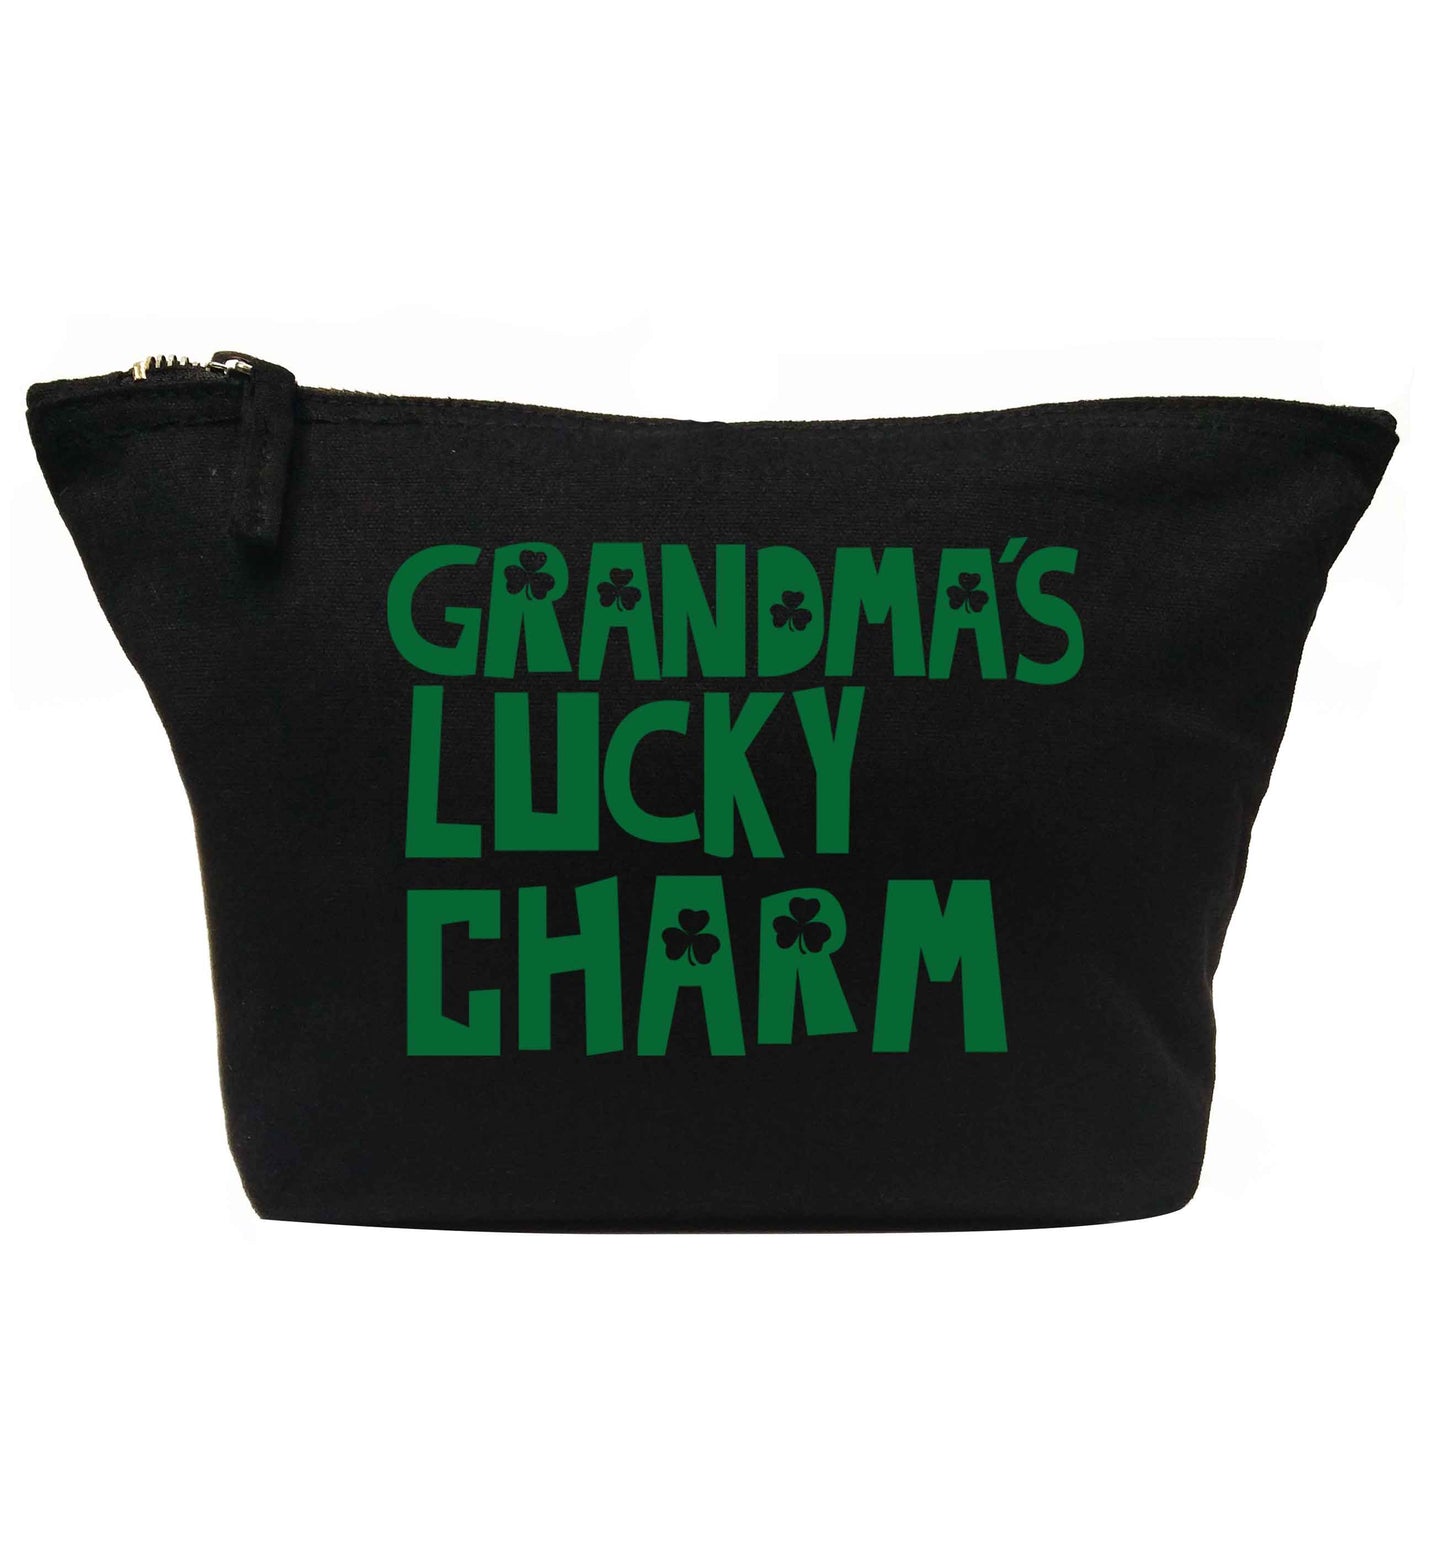 Grandma's lucky charm | Makeup / wash bag